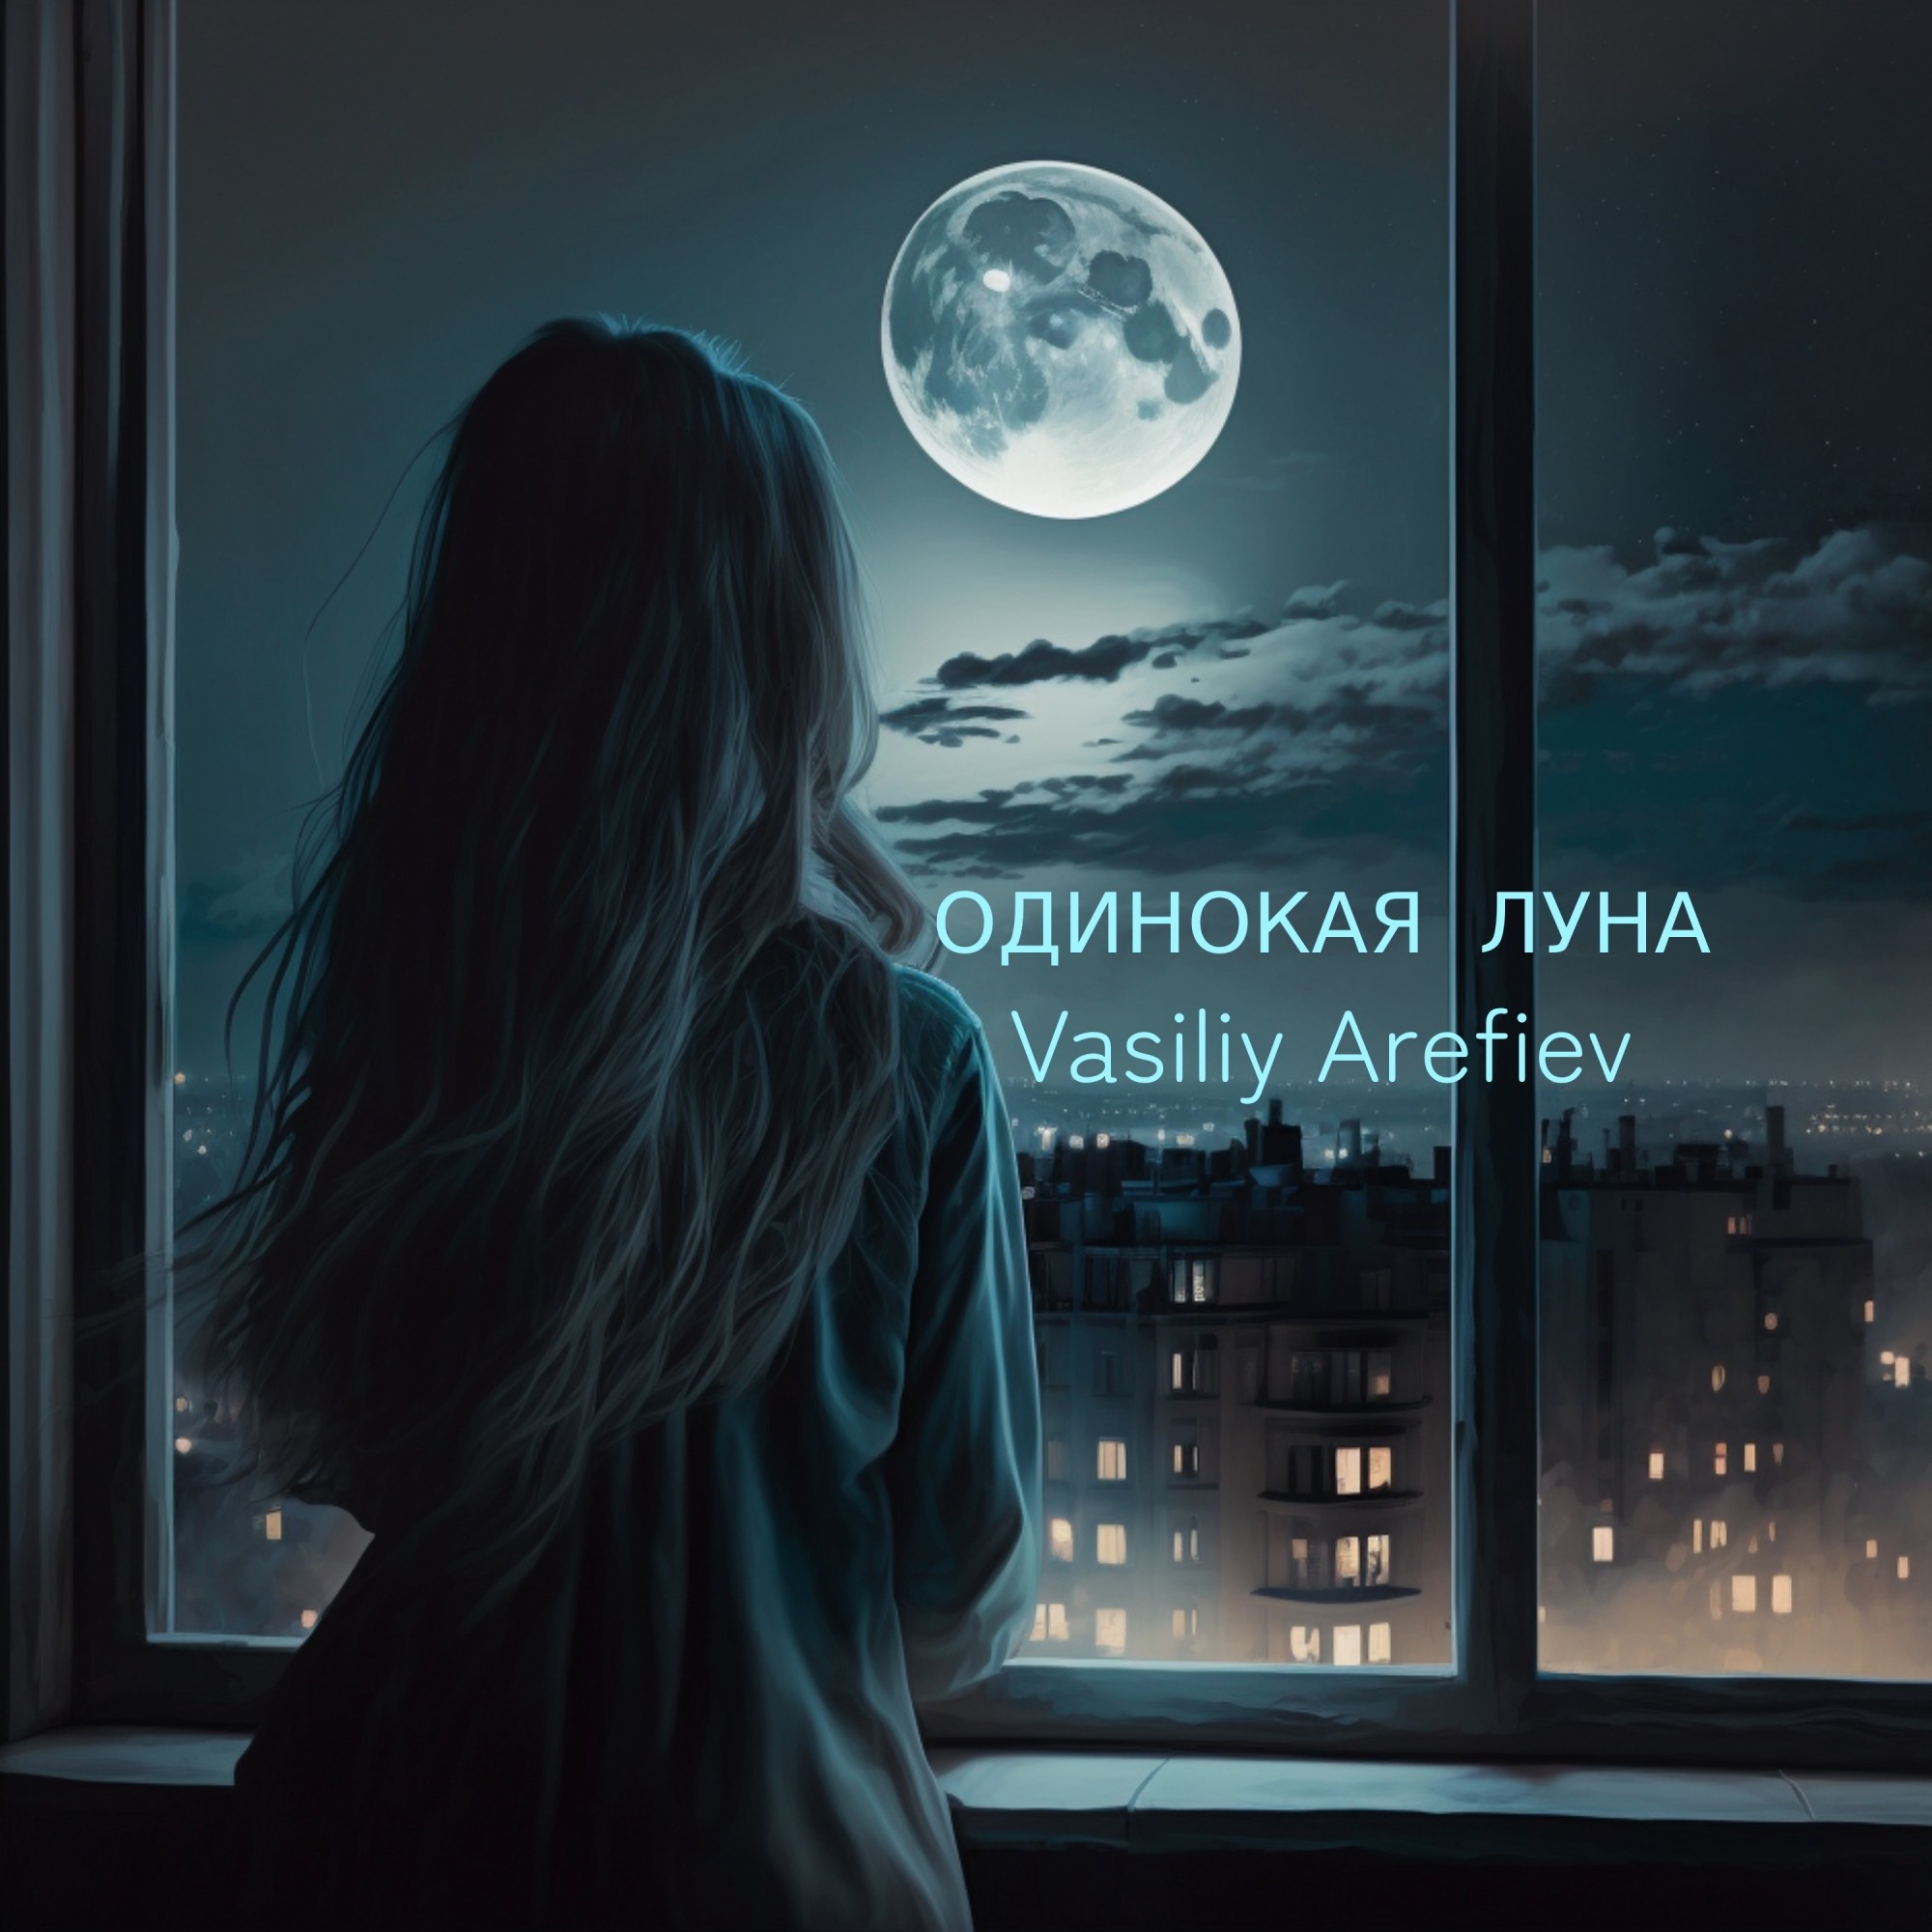 Есть одинокая луна. Одиночка Луна. Луна одиночество. Лунное одиночество. Одинокая Луна песня.